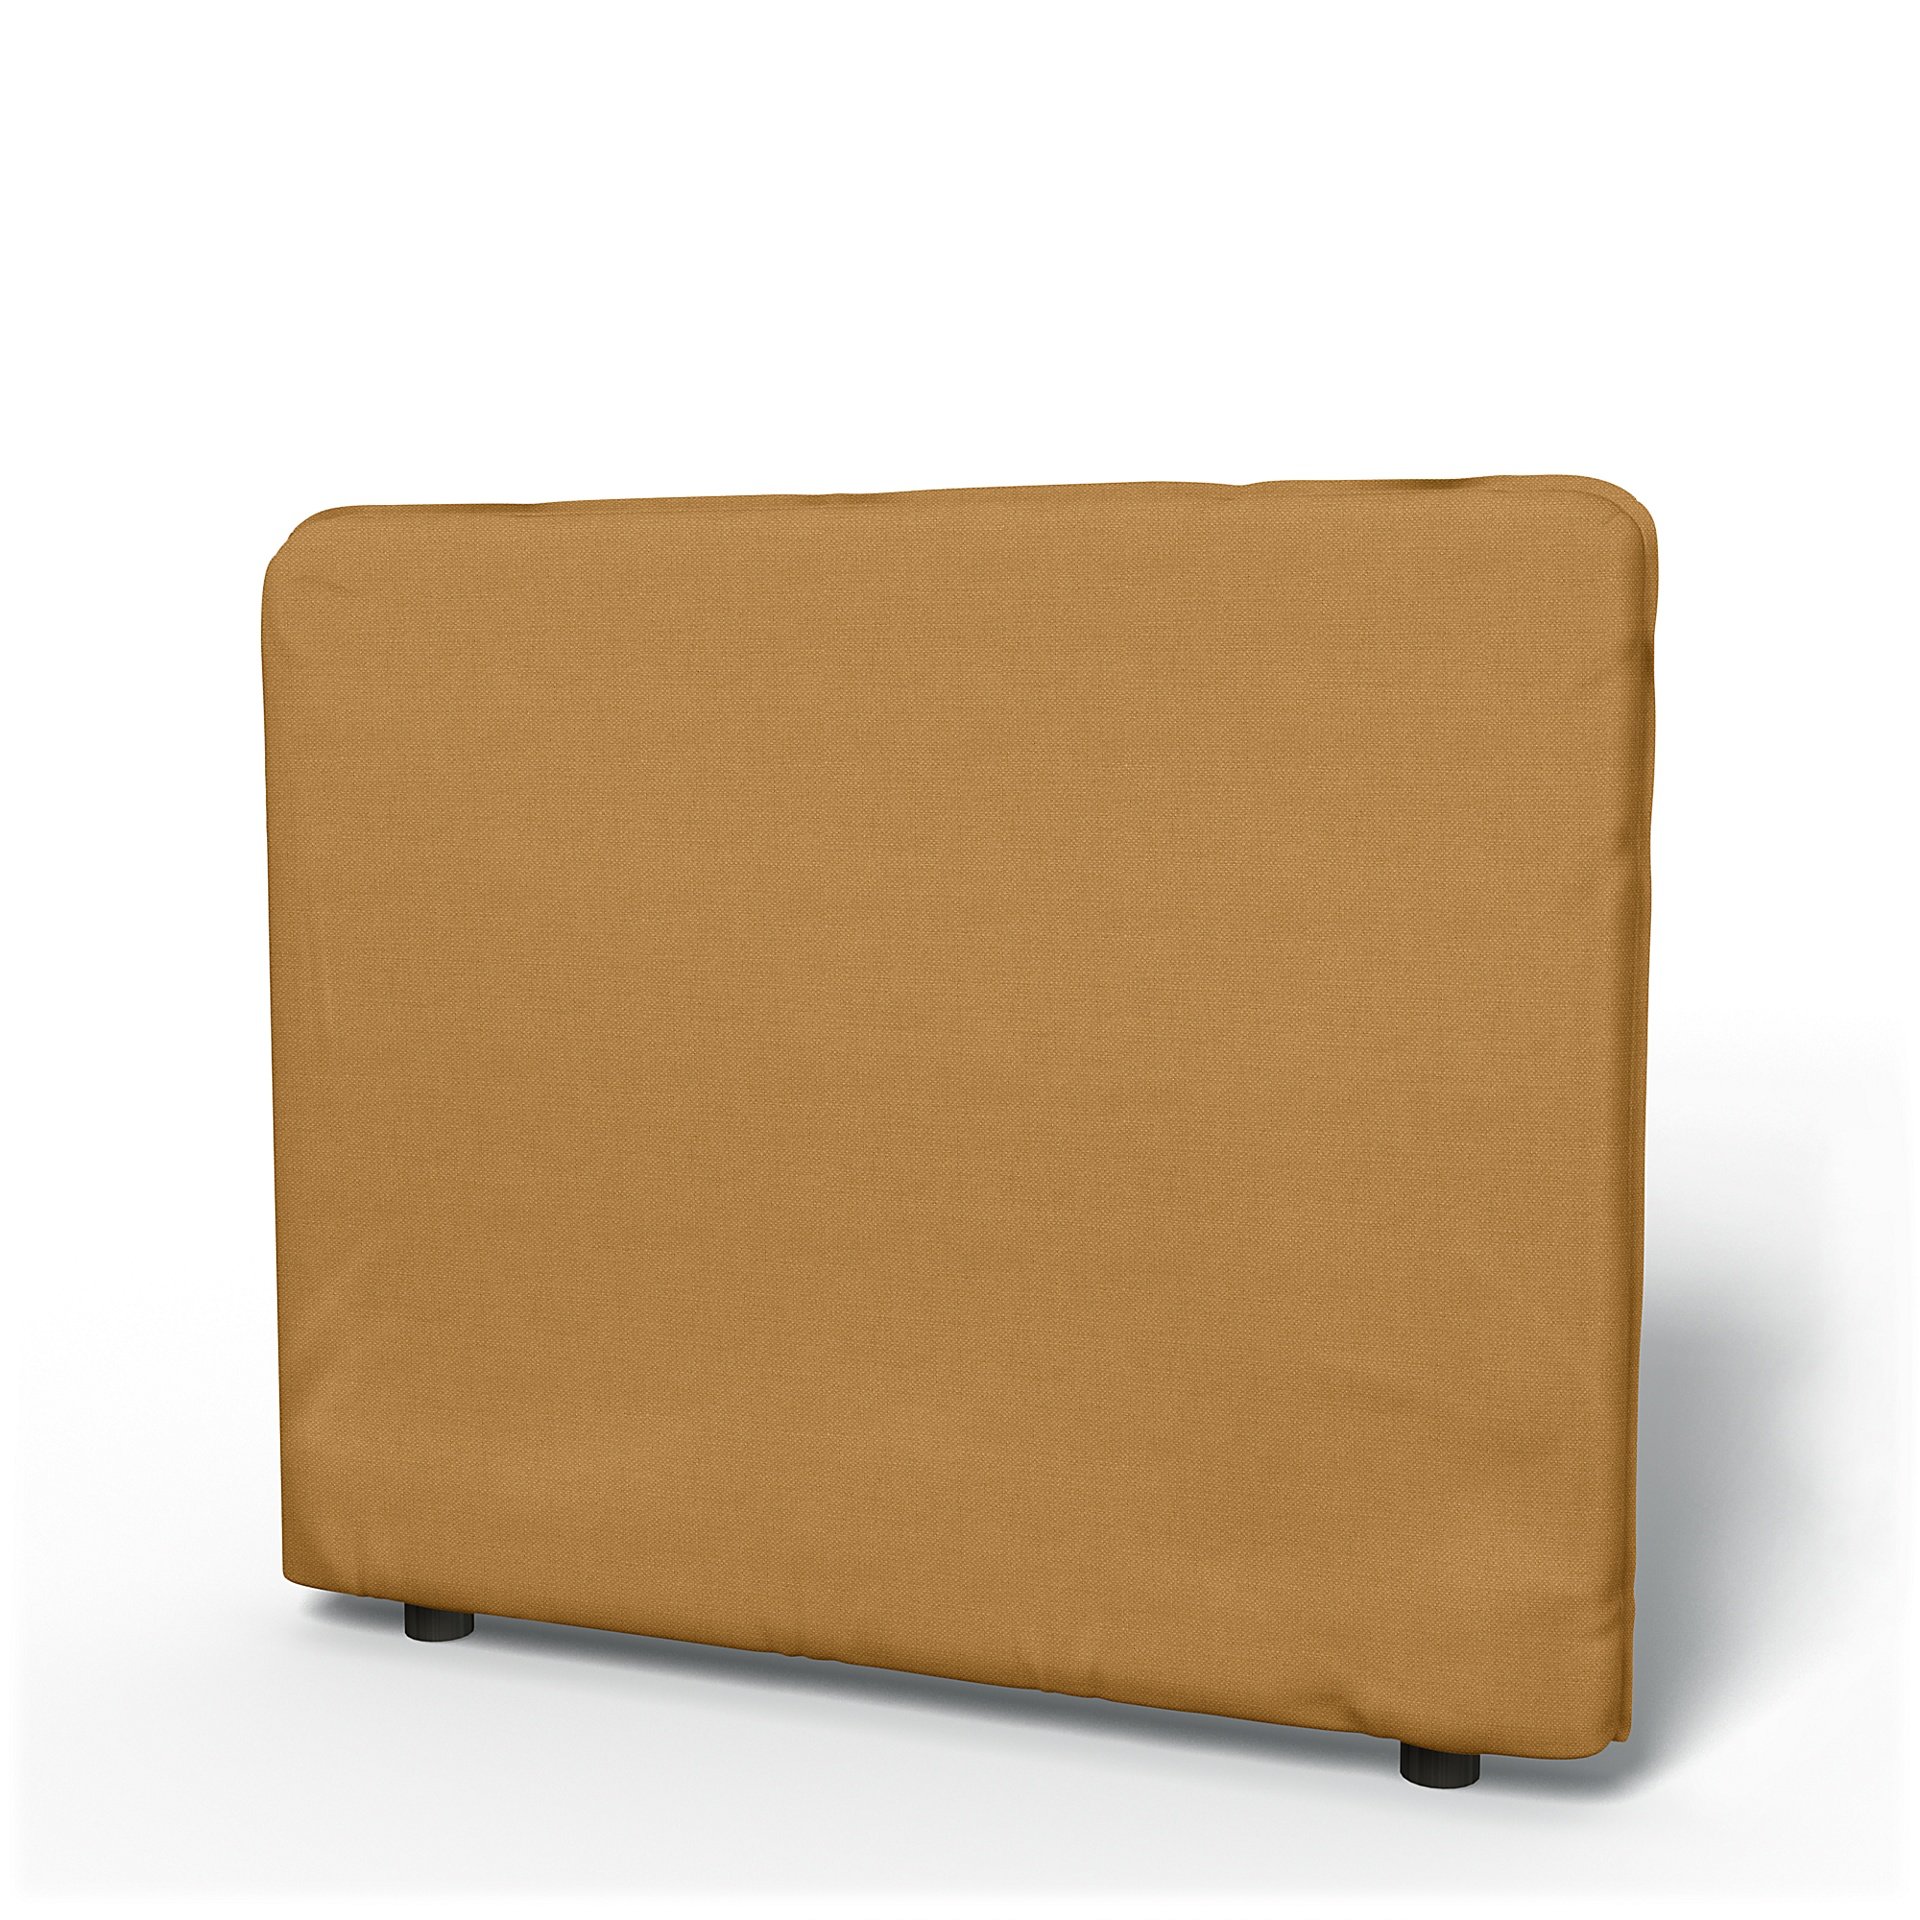 IKEA - Vallentuna Low Backrest Cover 100x80cm 39x32in, Mustard, Linen - Bemz